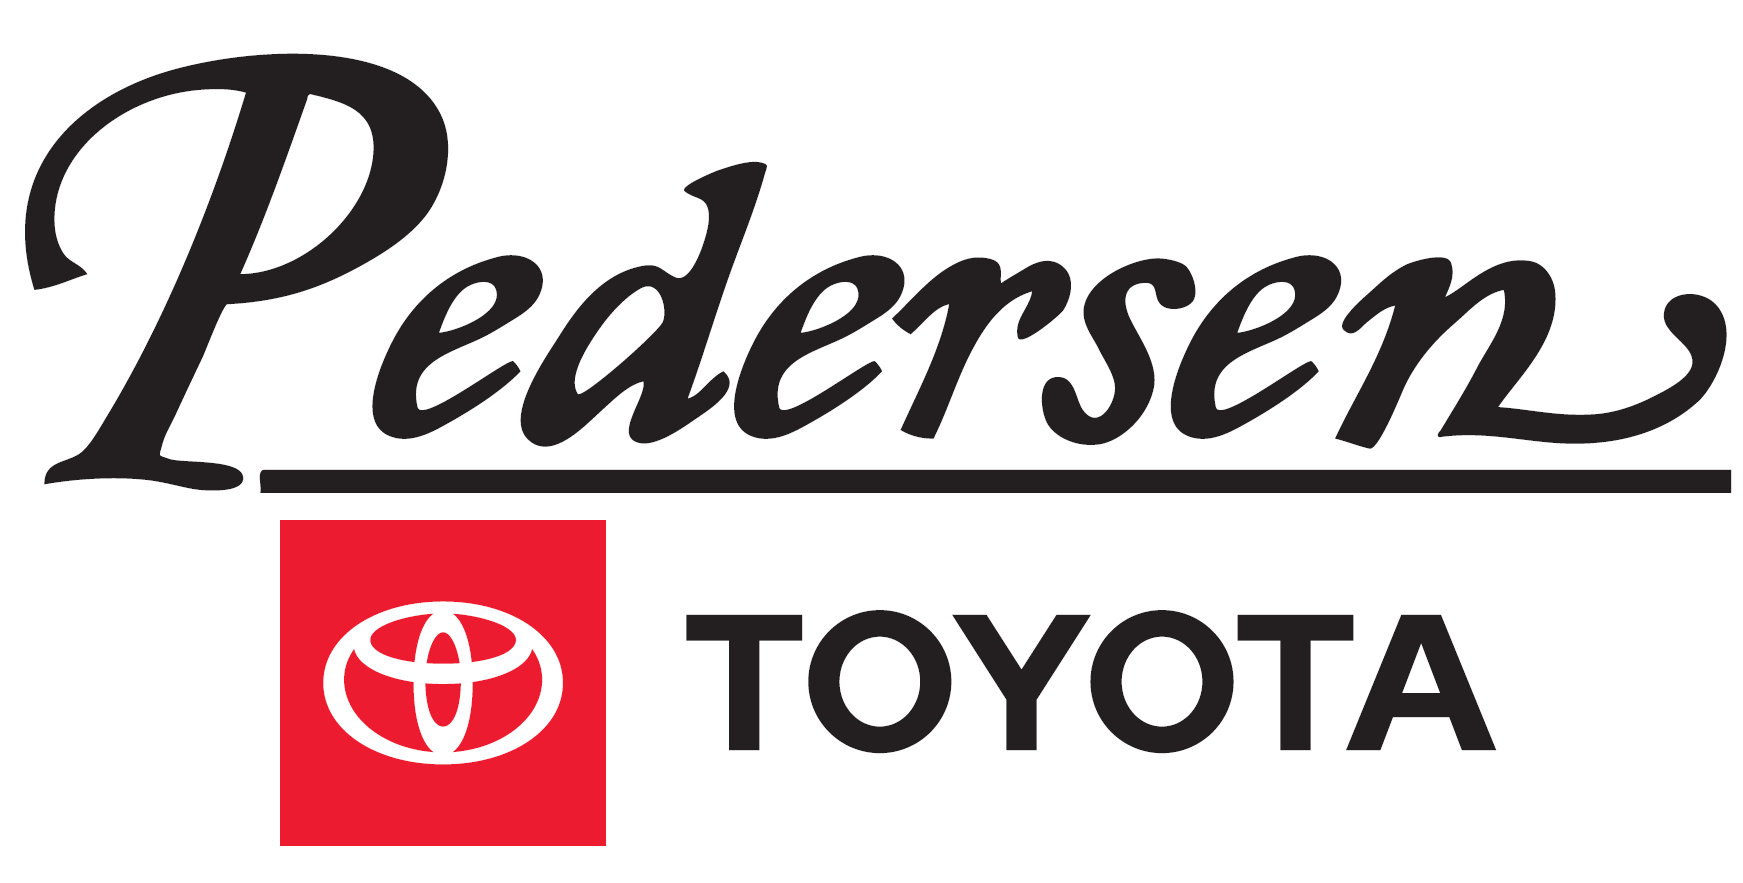 S. Pedersen Toyota (Tier 4)